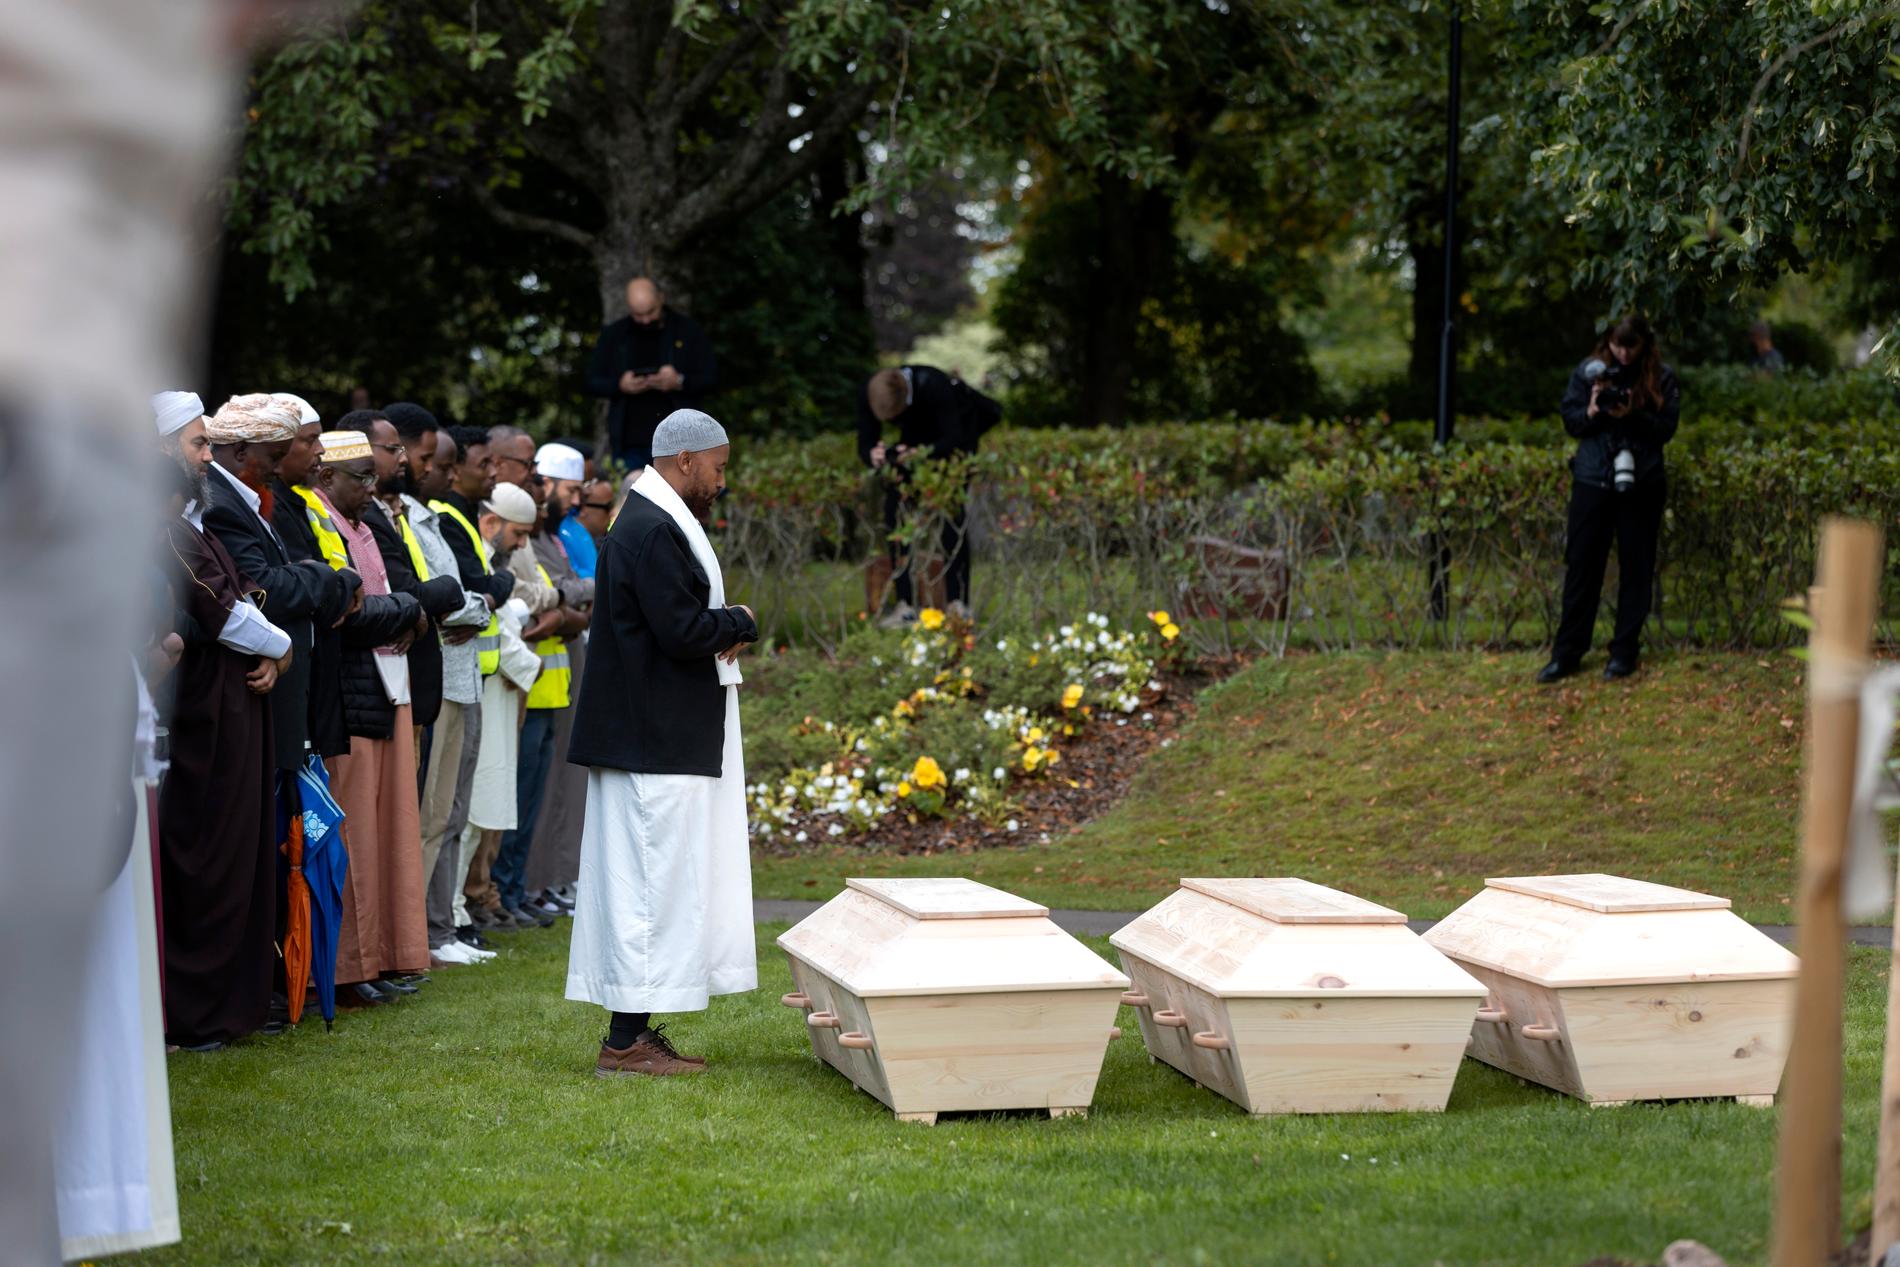 Dahir Macalin Aflow, Ahmed Cantoob Hassan och Abdirahman Yusuf Abdi vilar på Falköpings muslimska begravningsplats.